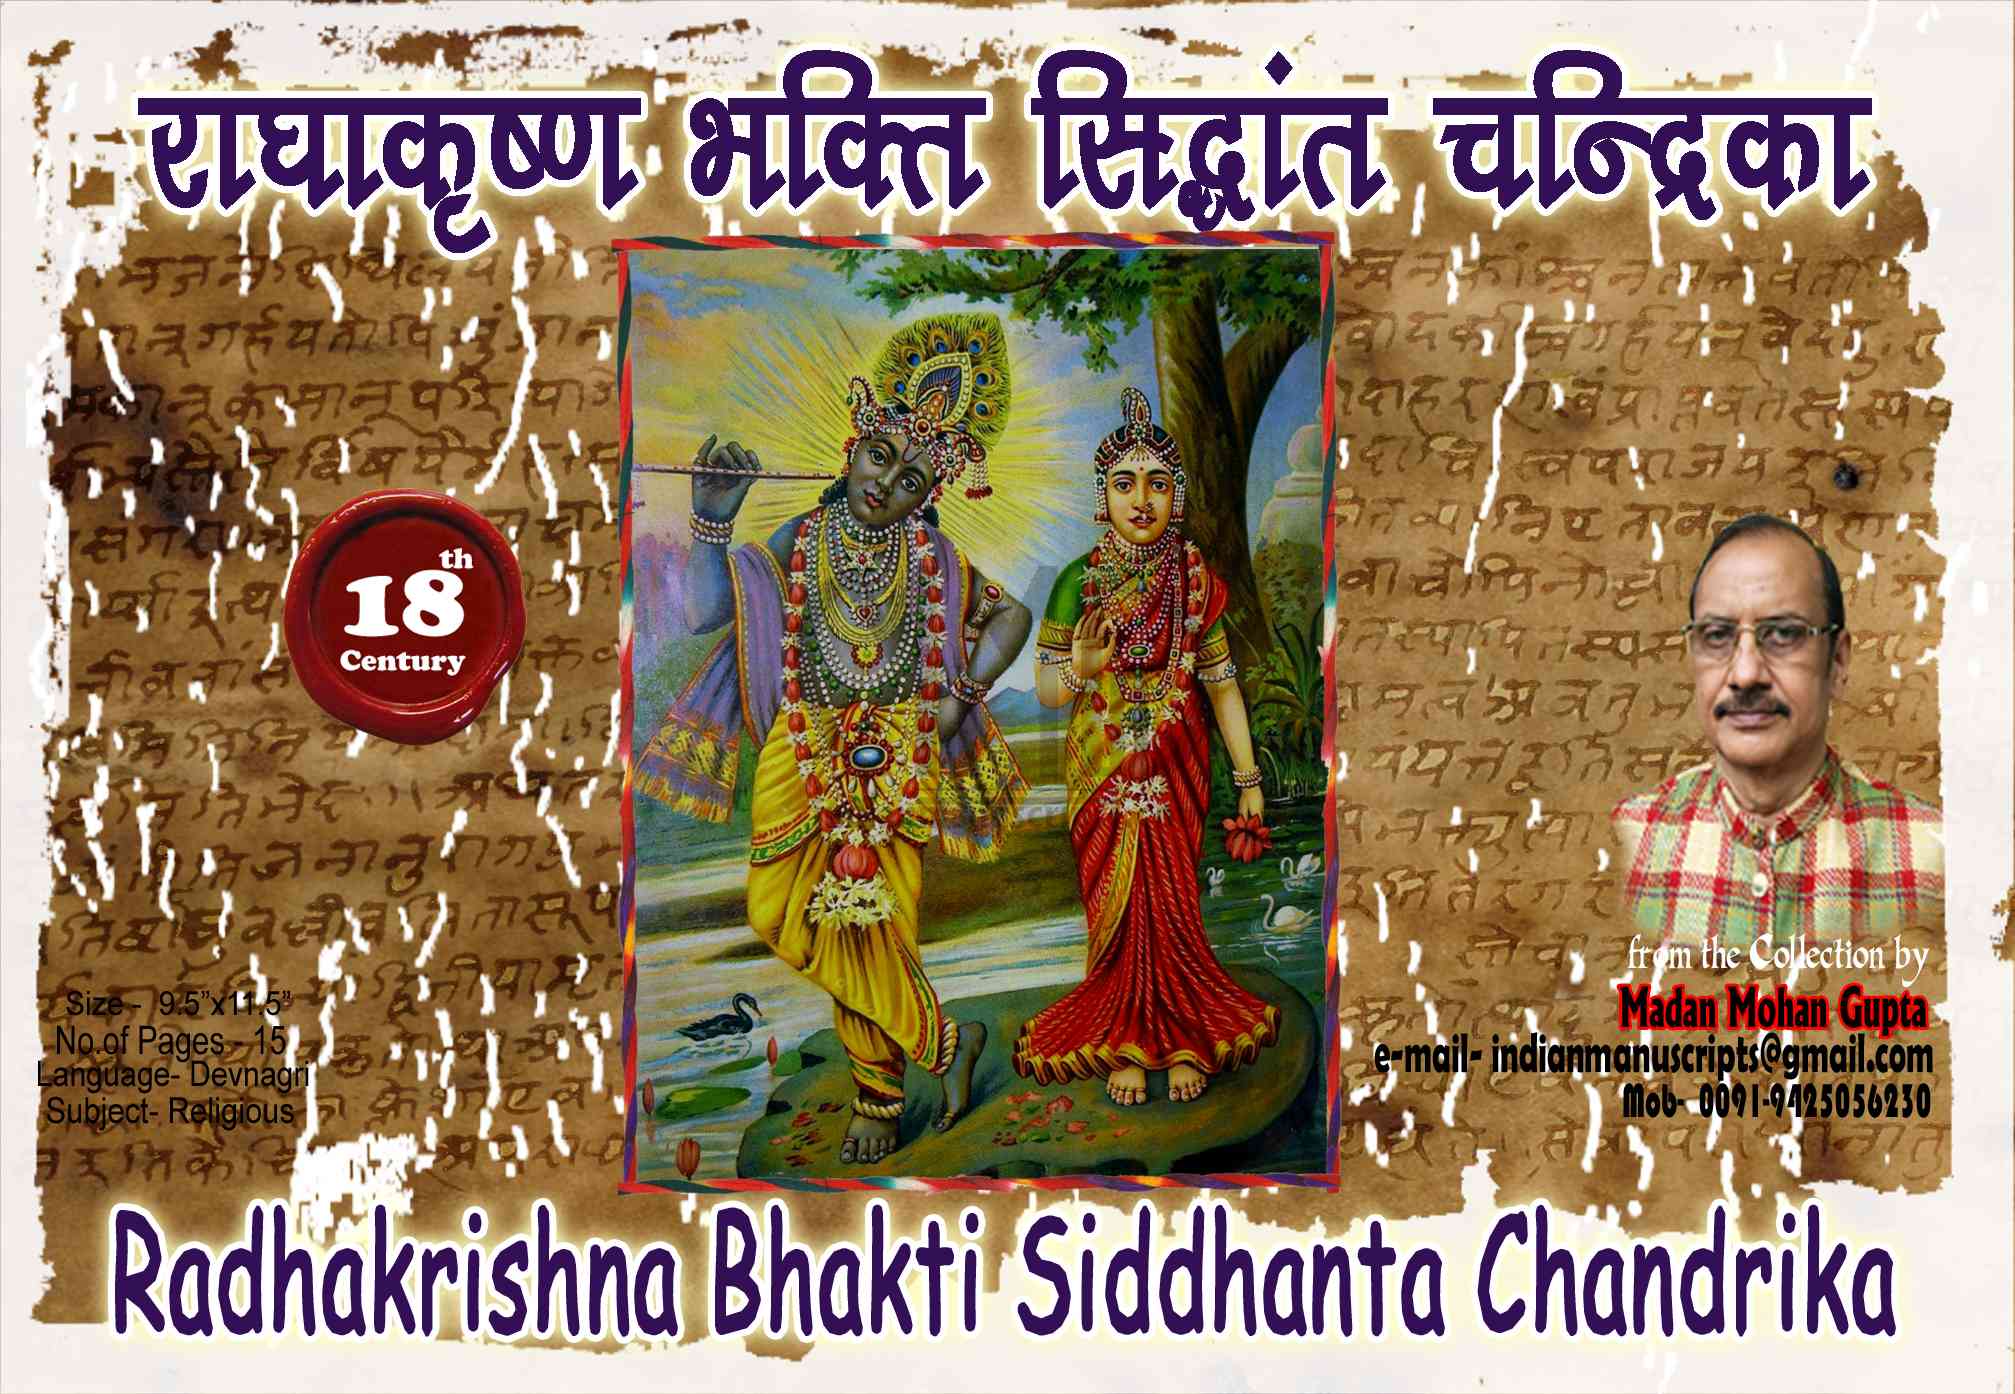 Radhakrishna Bhakti Siddhanta Chandrika